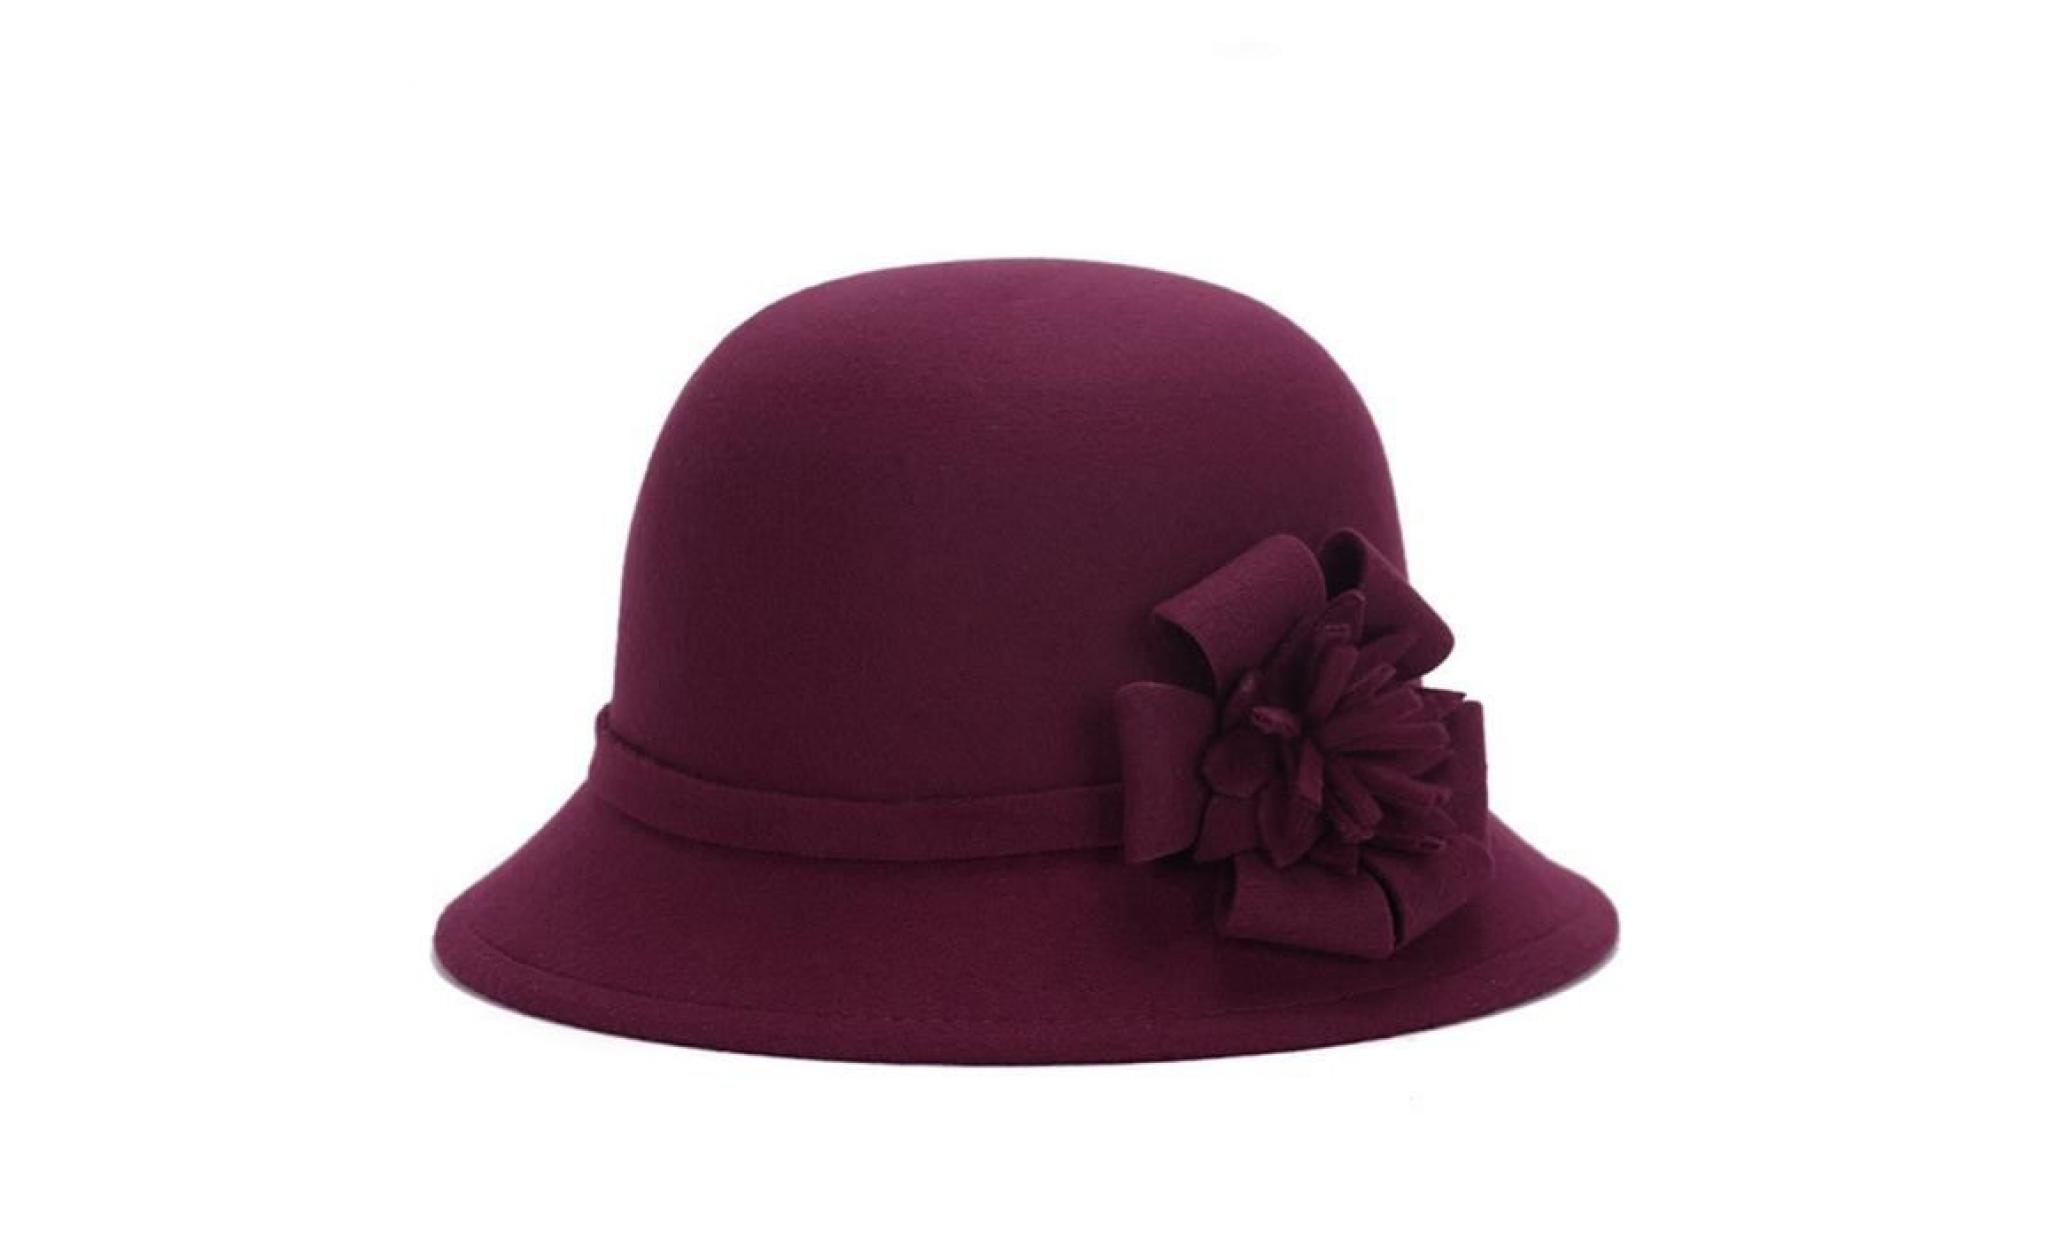 femmes rétro fleur chapeau bowler couleur unie cap pour party prom cocktail voyage rose rouge